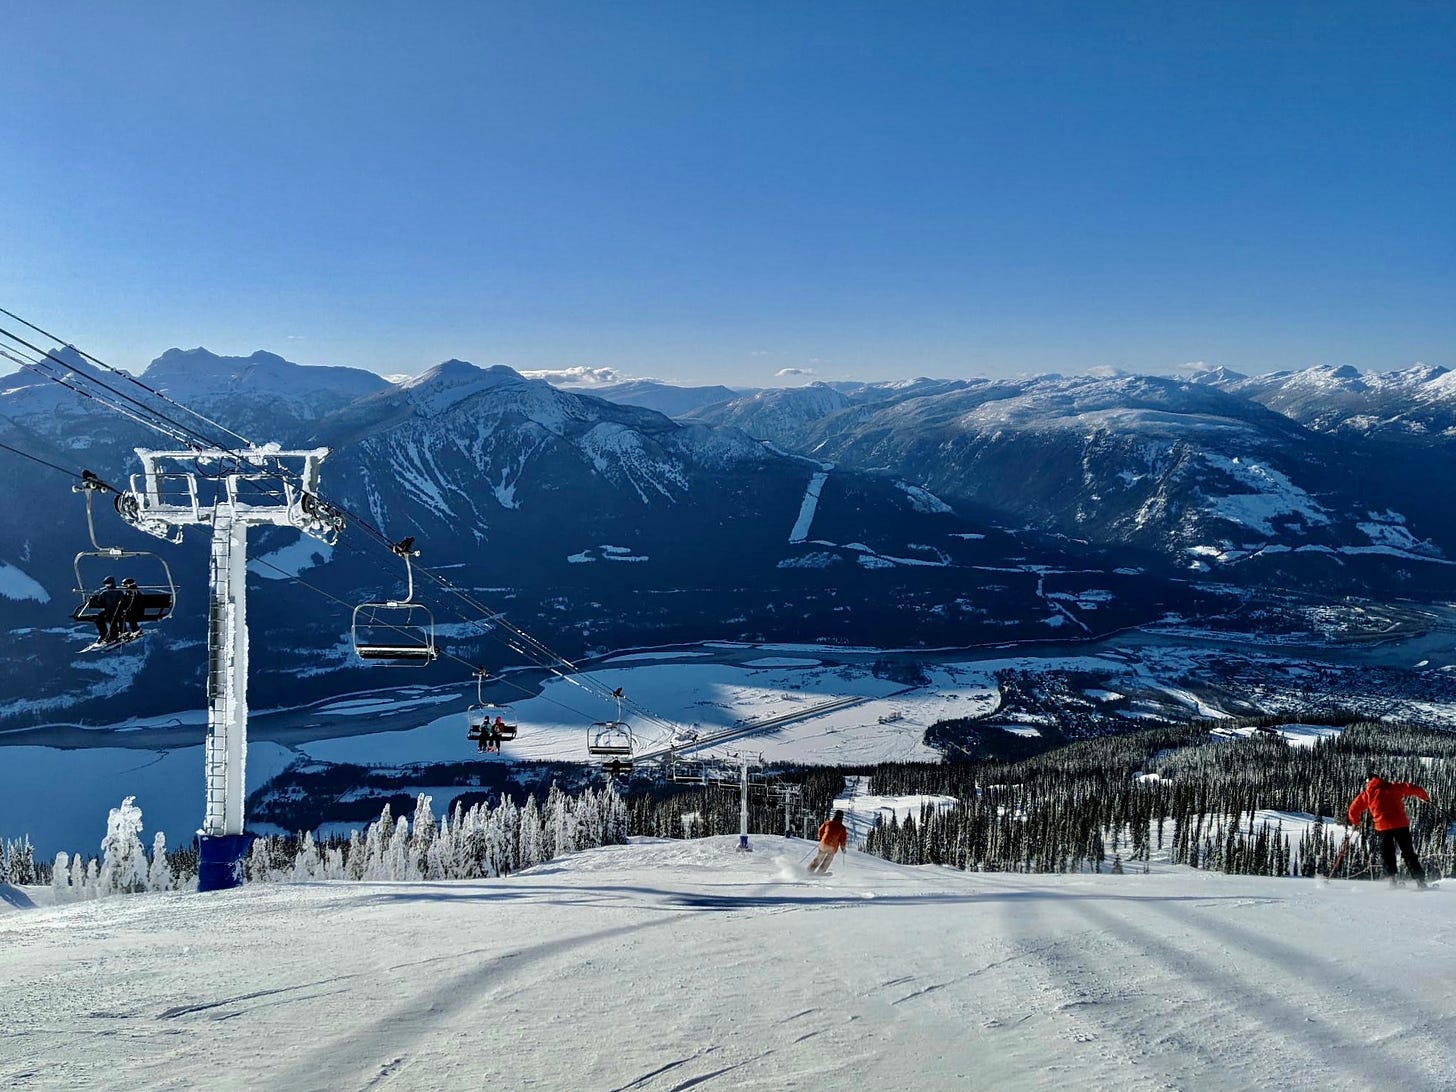 Revelstoke Ski Resort, British Columbia, Canada